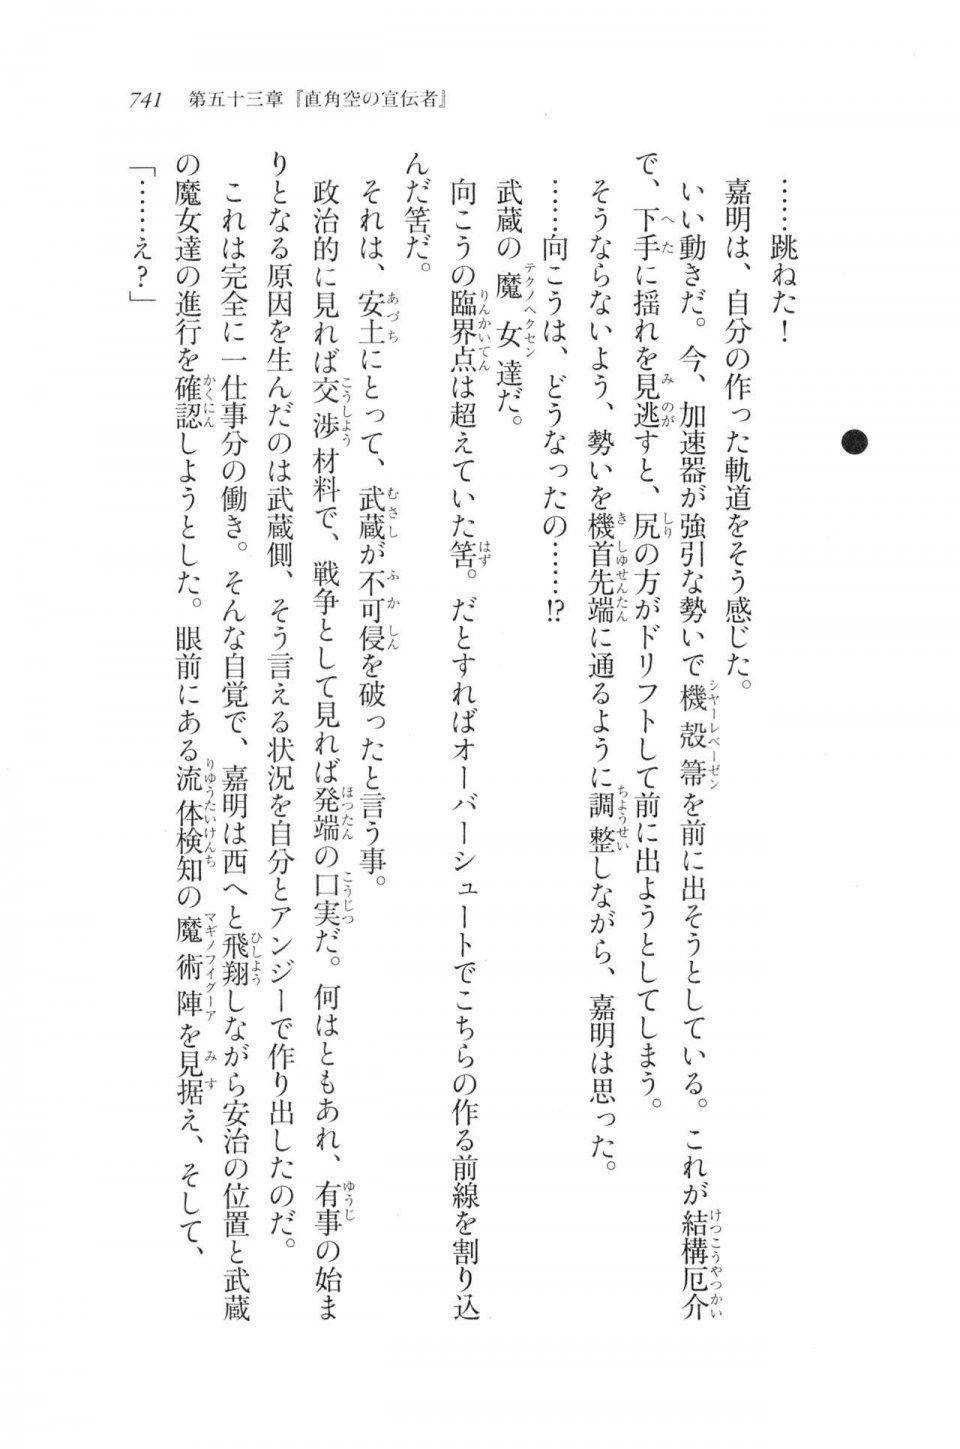 Kyoukai Senjou no Horizon LN Vol 20(8B) - Photo #741